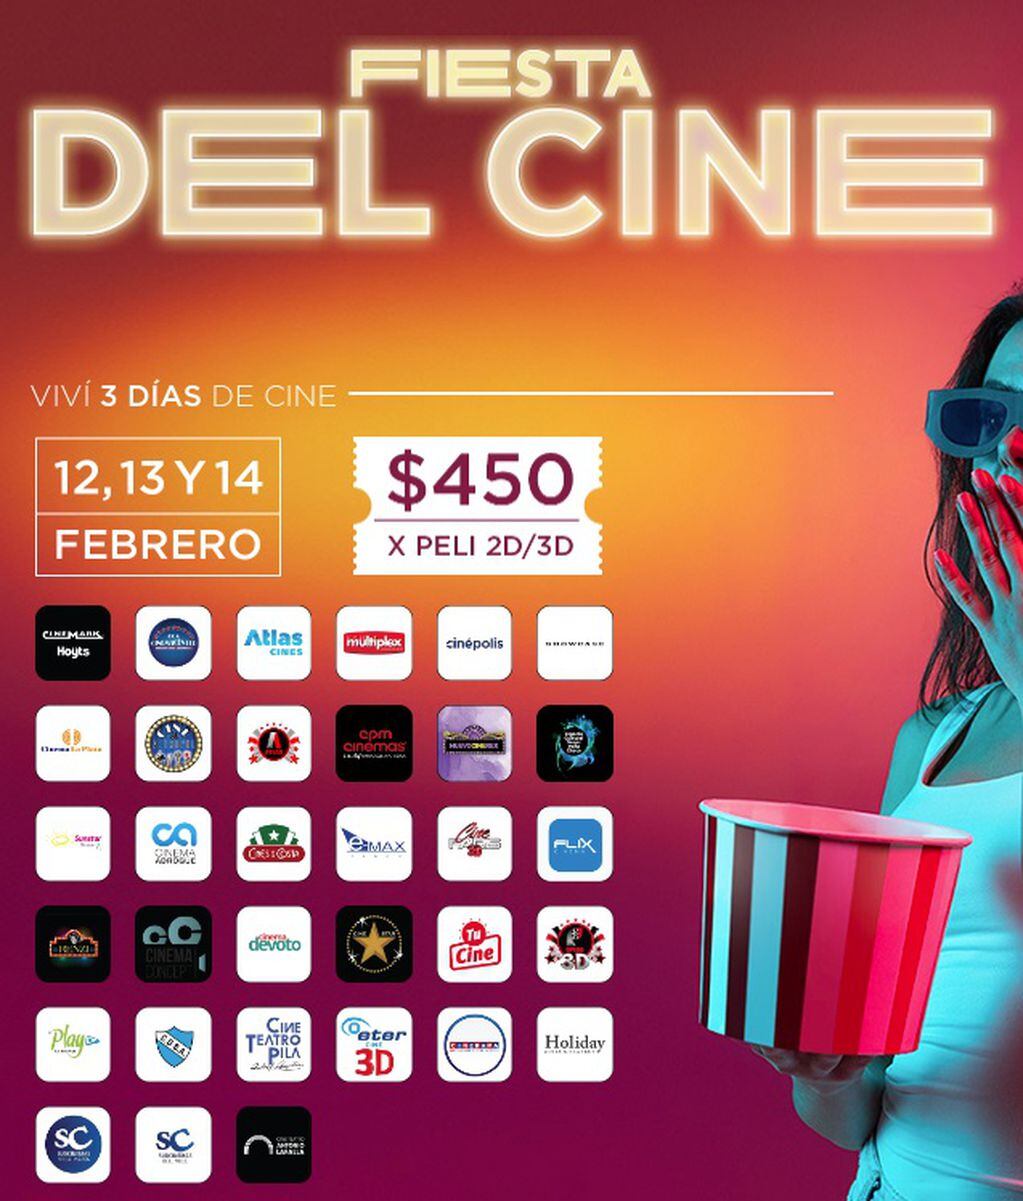 La fiesta del cine: entradas de cine a $450, ¿cómo comprar?